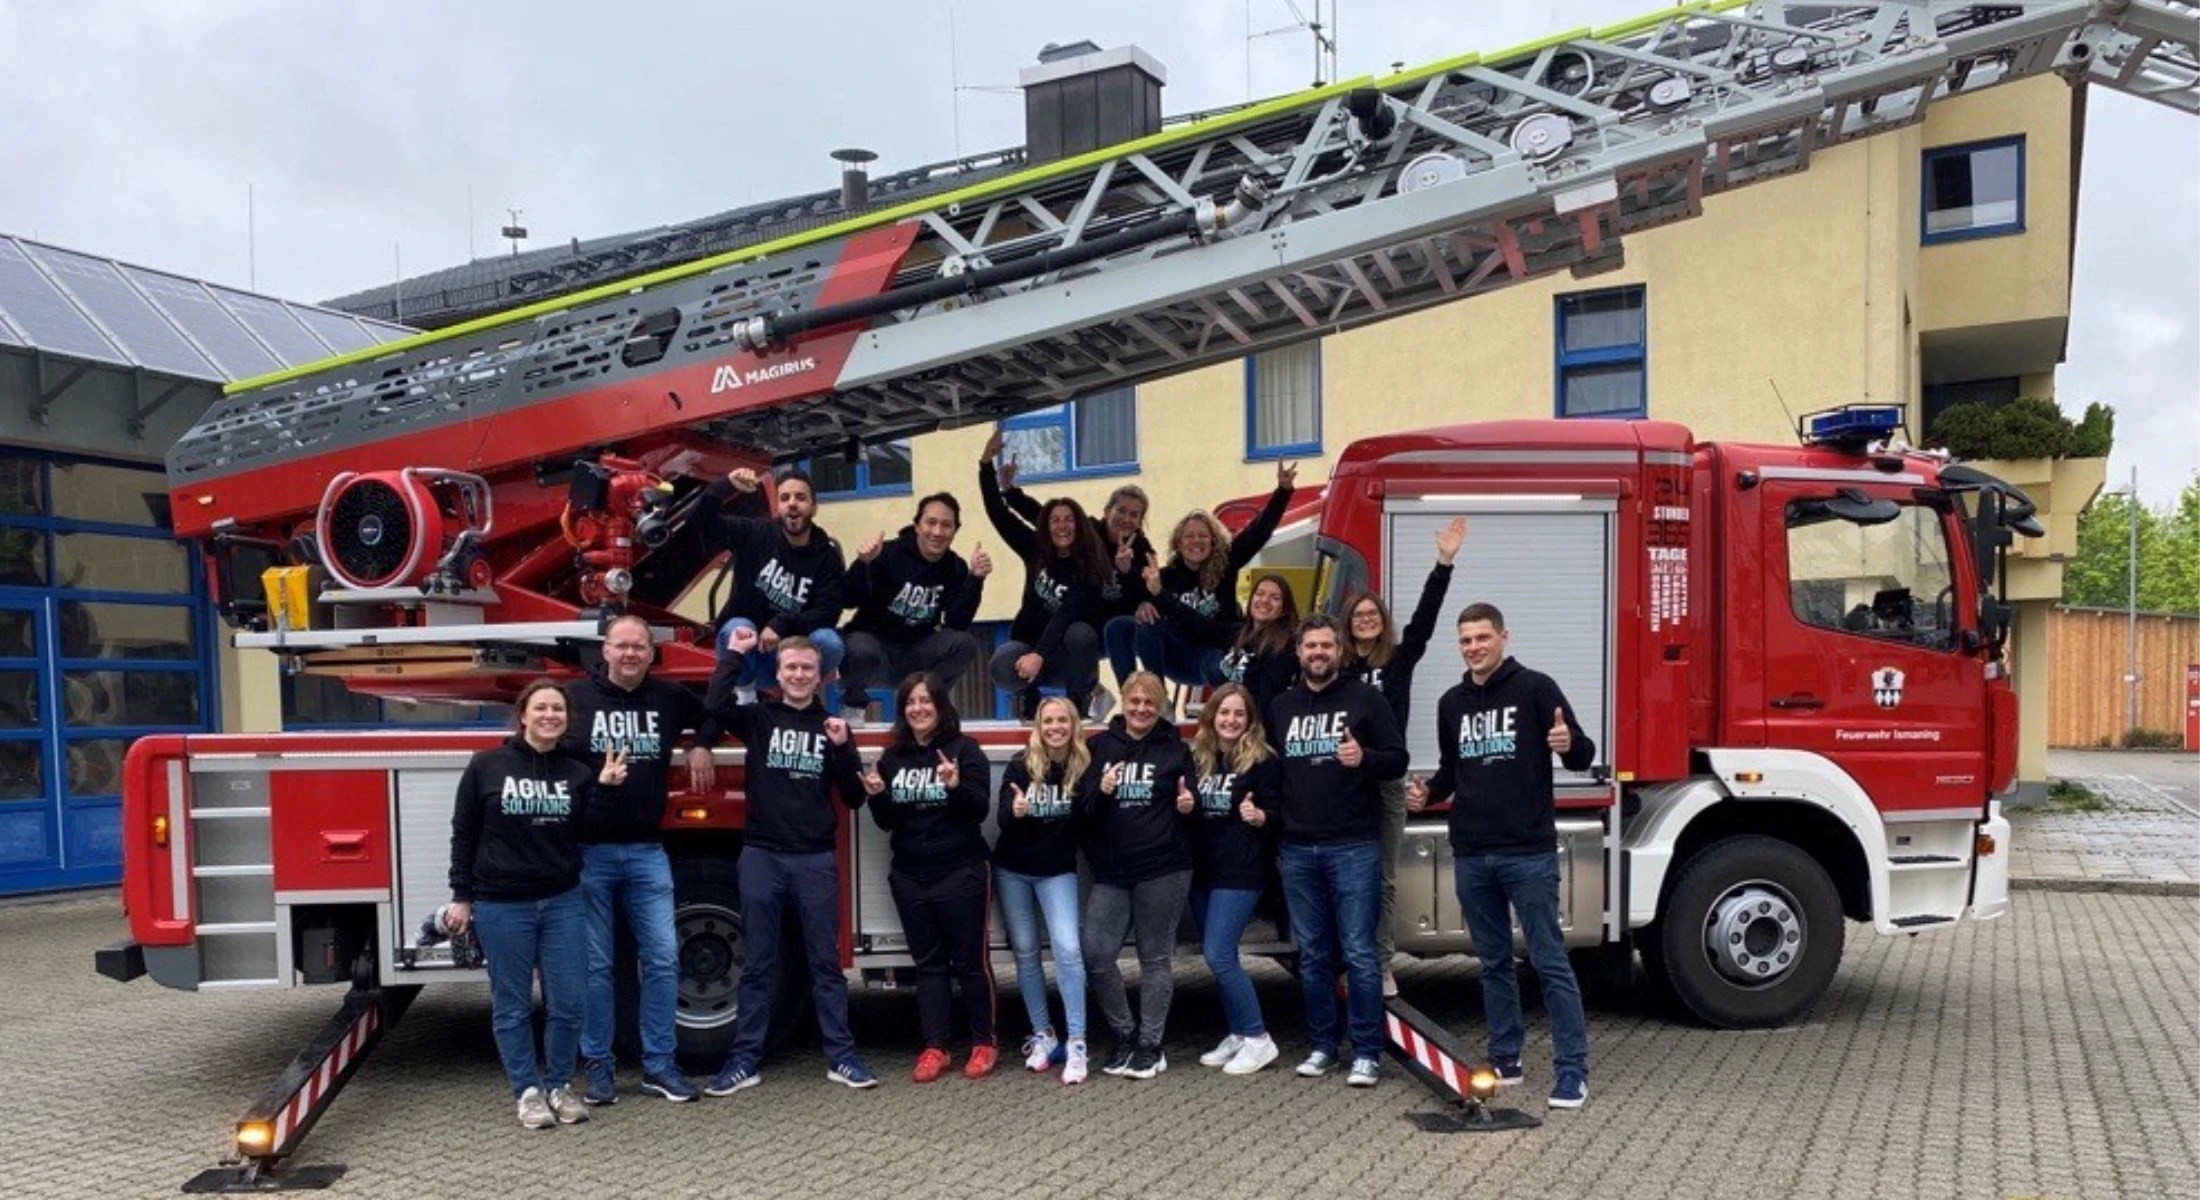 Teamevent Agile Solutions bei der freiwilligen Feuerwehr